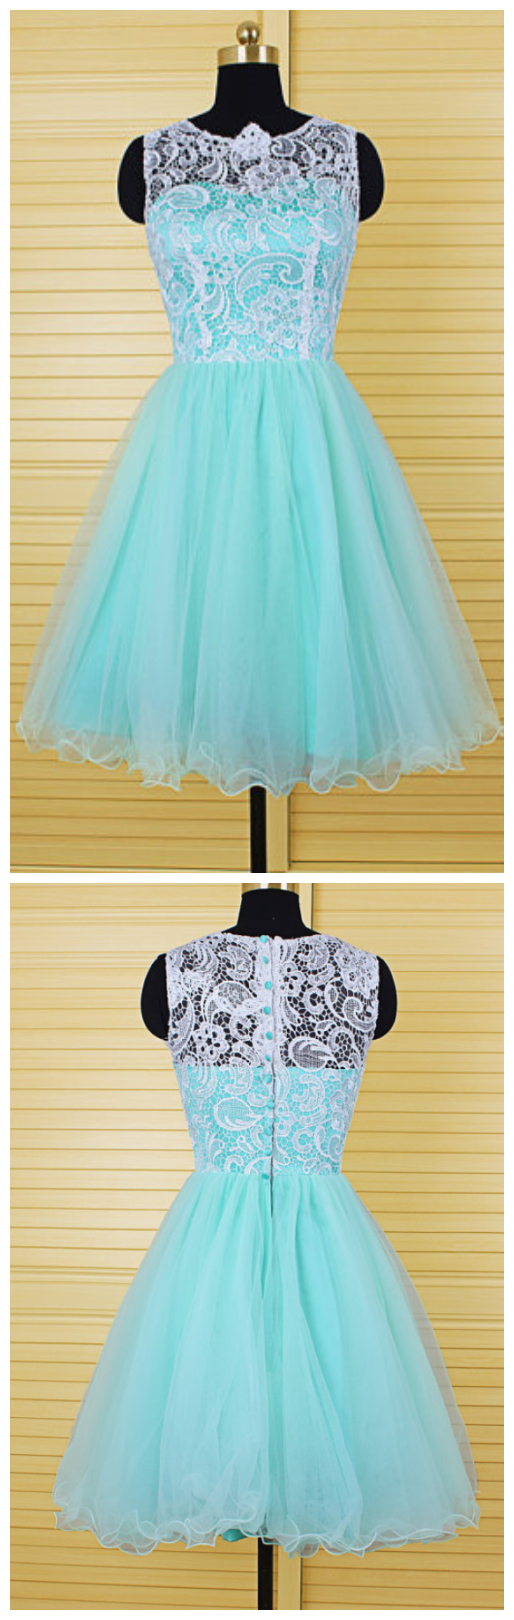 Charming Homecoming Dress,organza Homecoming Dress,lace Homecoming Dress,o-neck Homecoming Dress